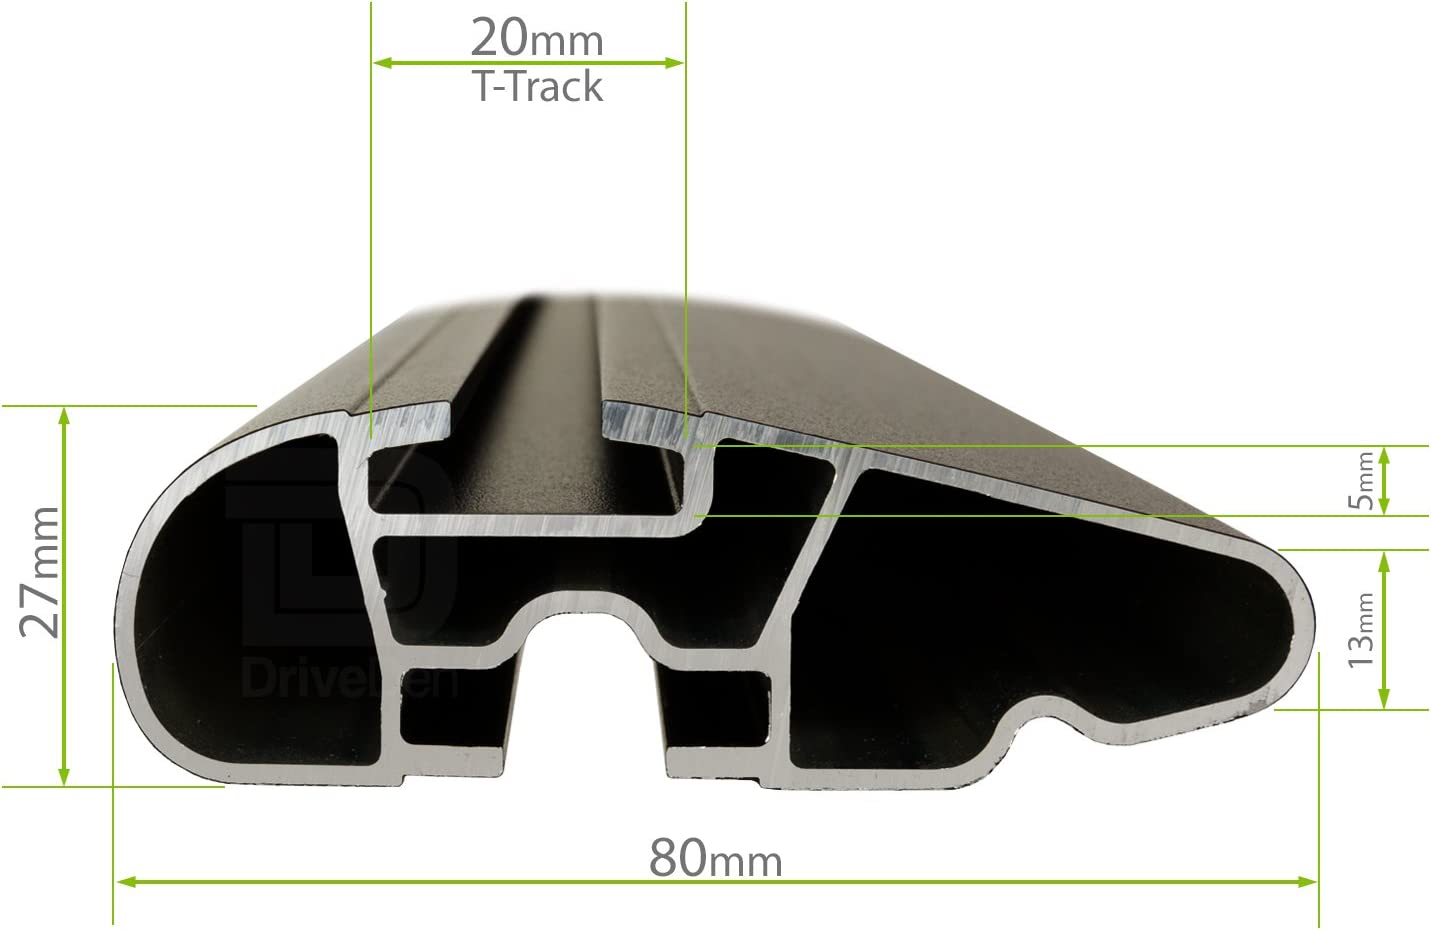 Barre portapacchi da abbinare al kit Lux PR10 e Kit link per Mercedes Gle Coupe' 5 porte anno 2015> (senza corrimano)